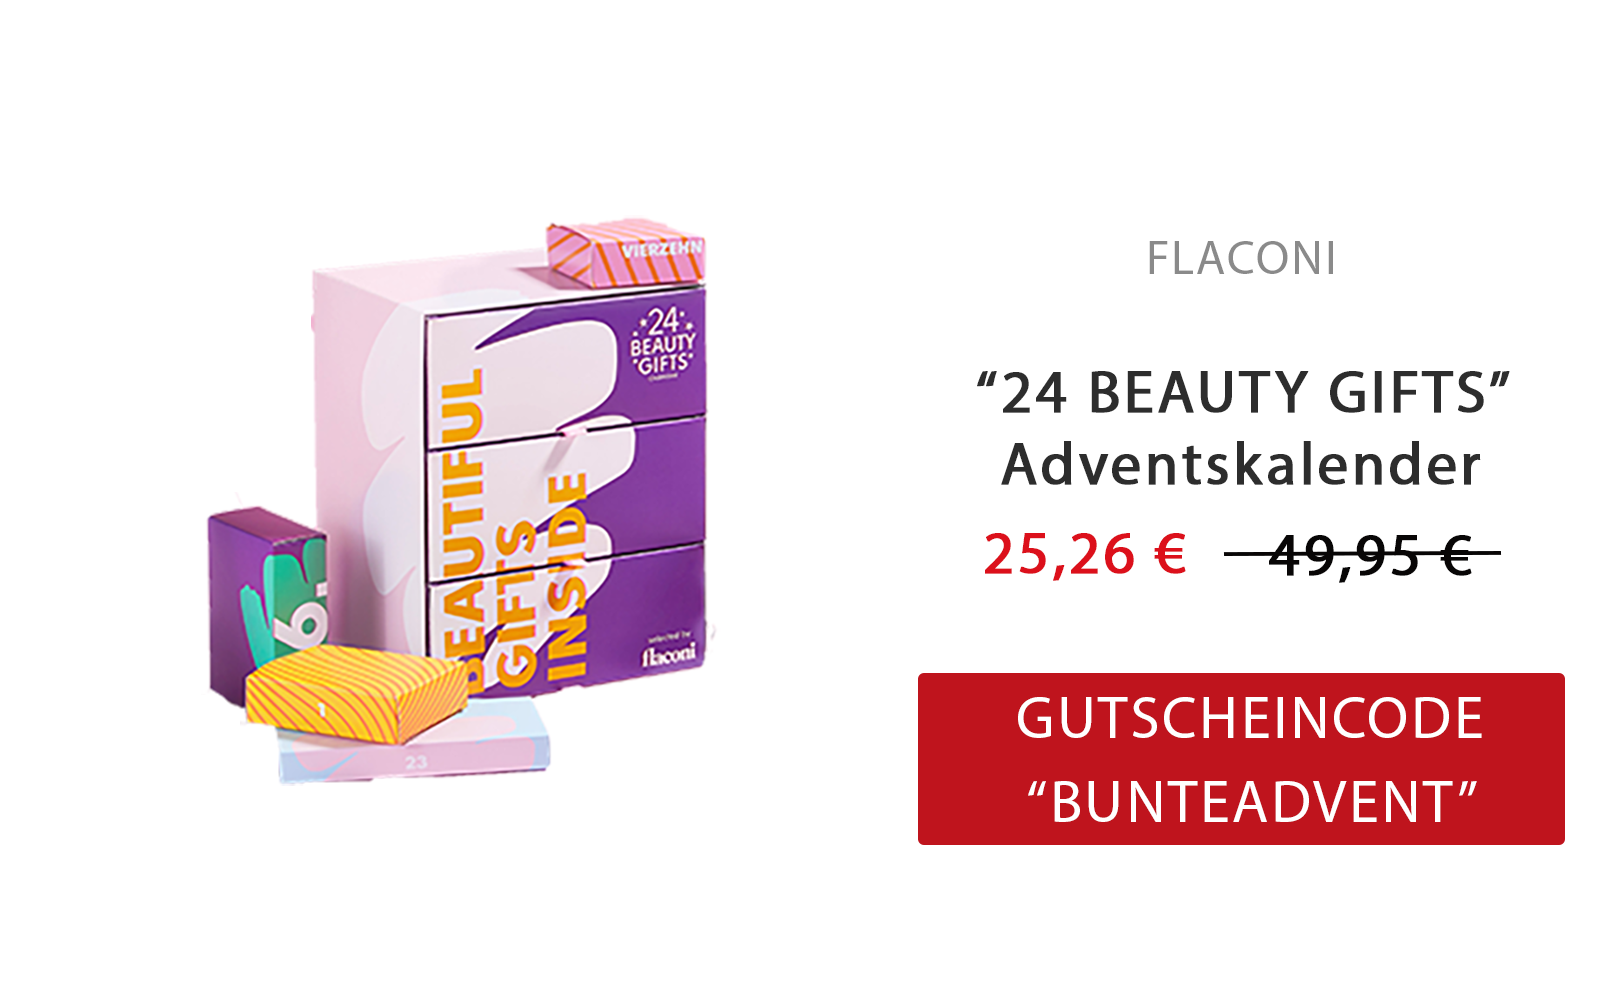 24 Beauty Gifts Adventskalender Flaconi Bunte Deal